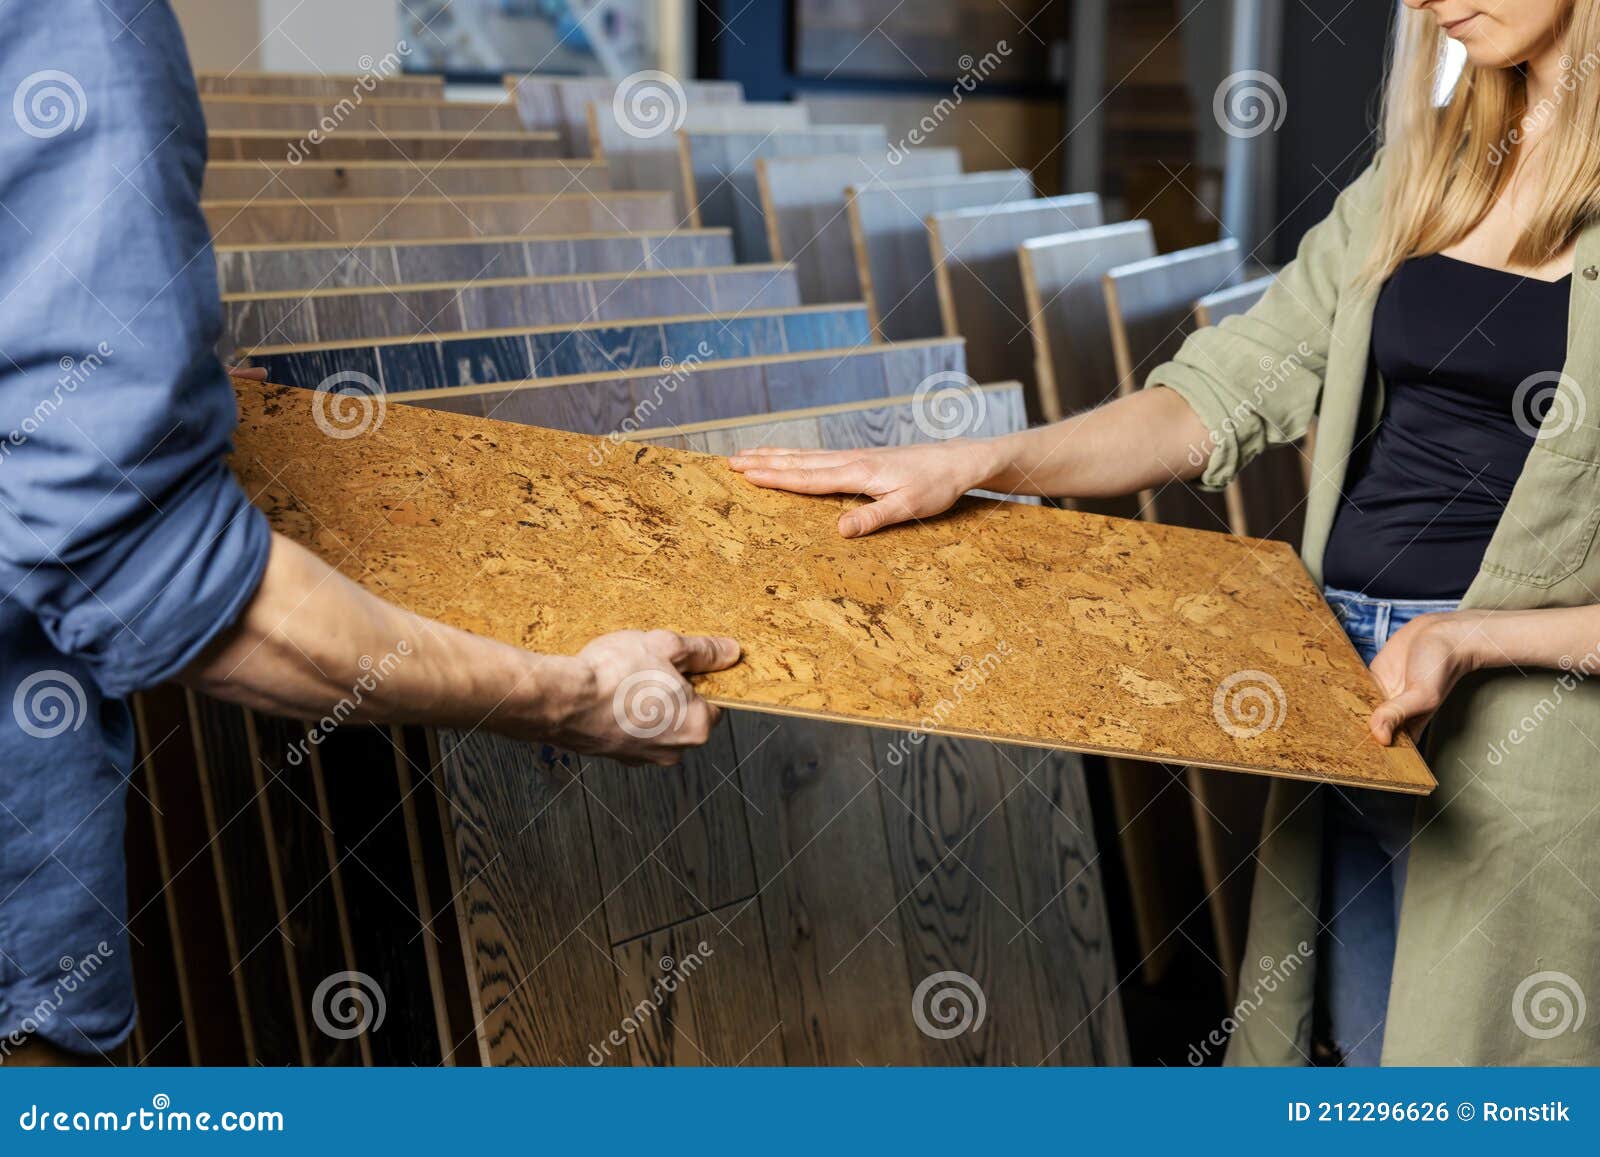 couple choosing cork floor for home improvements in flooring shop